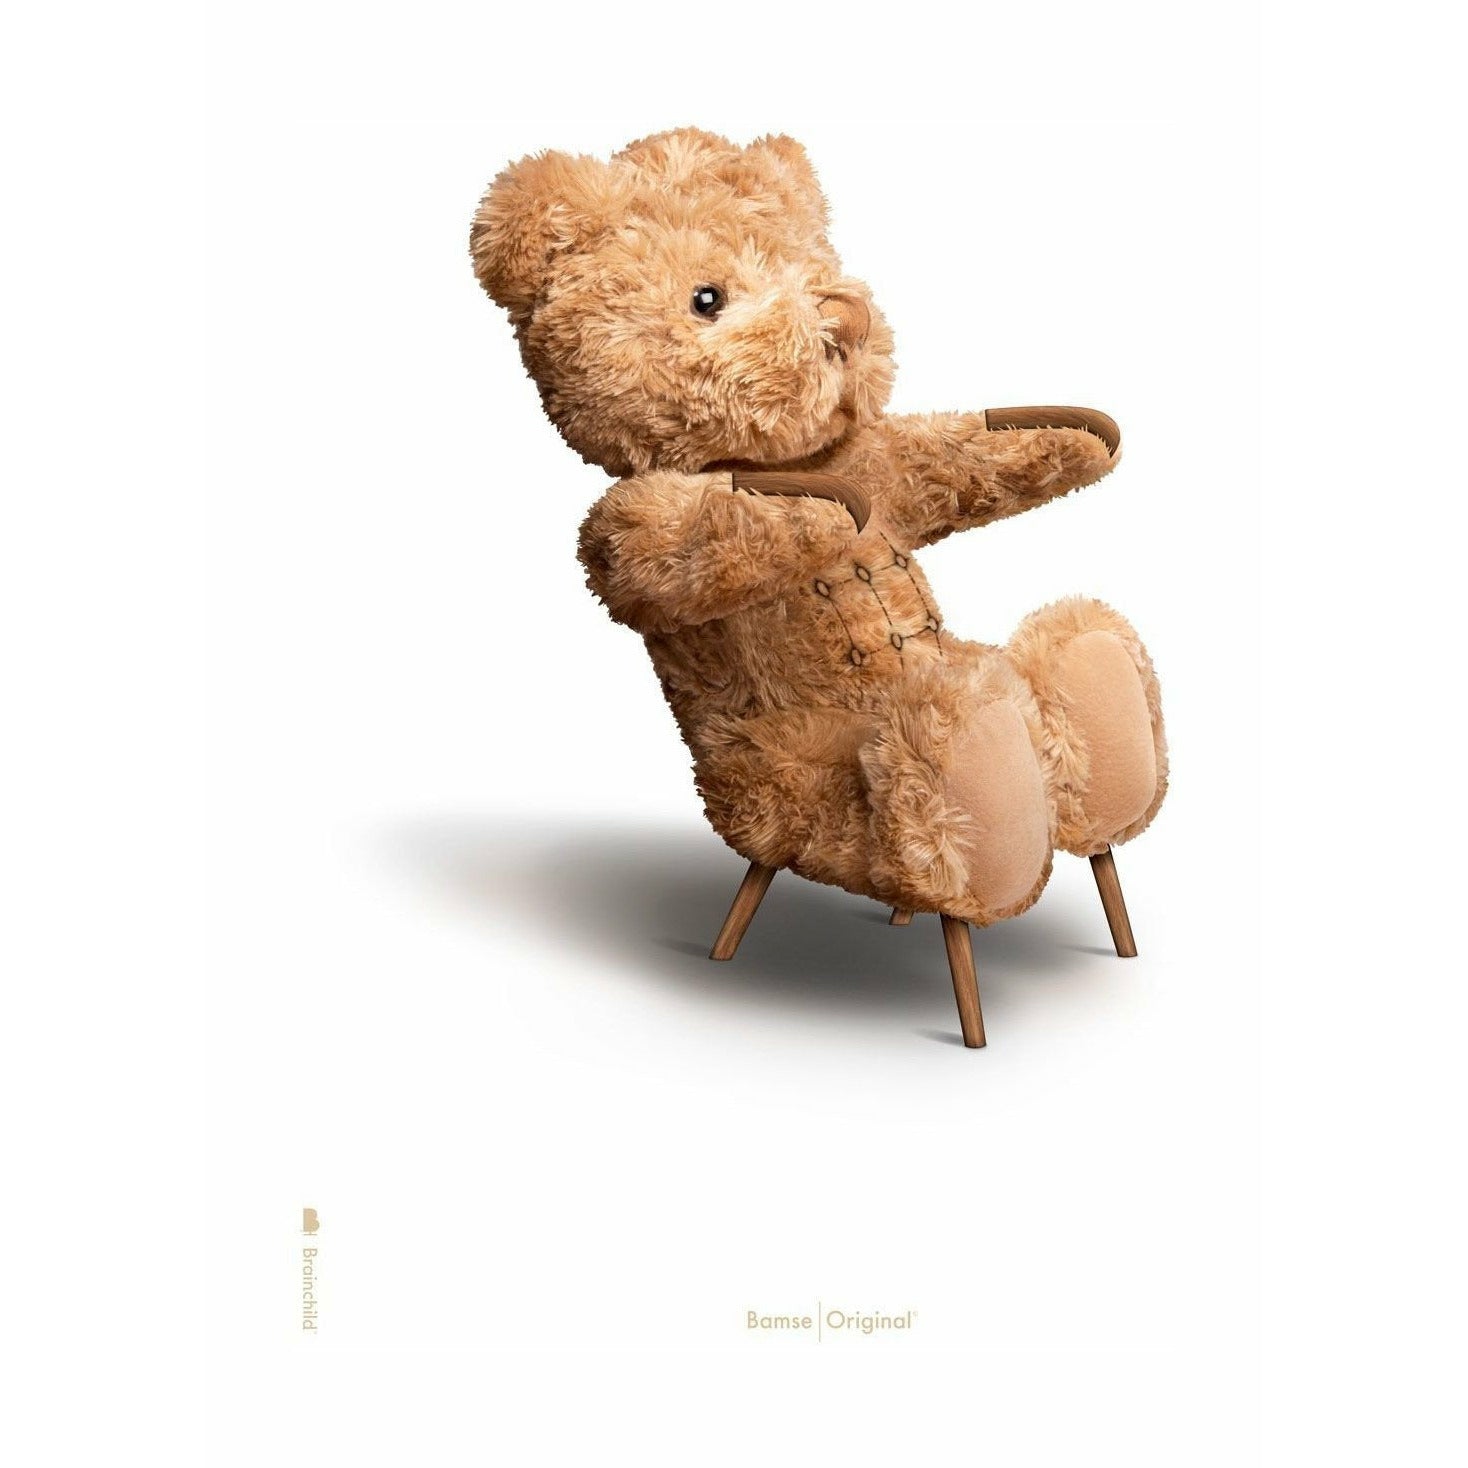 Pomysny plakat Teddy Bear bez ramki 30x40 cm, białe tło